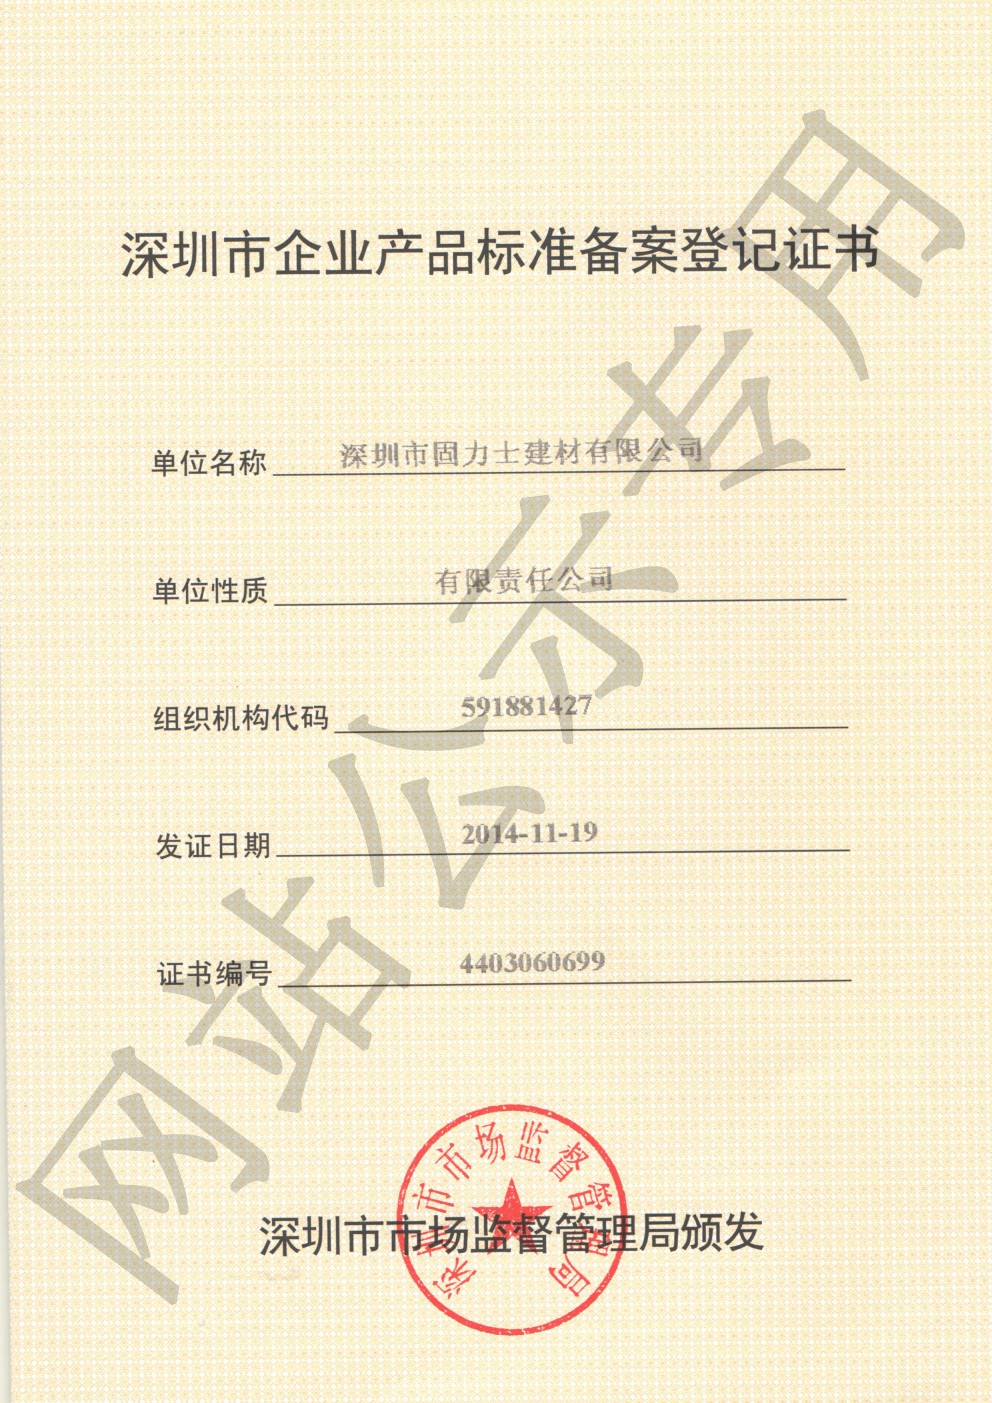 隆尧企业产品标准登记证书